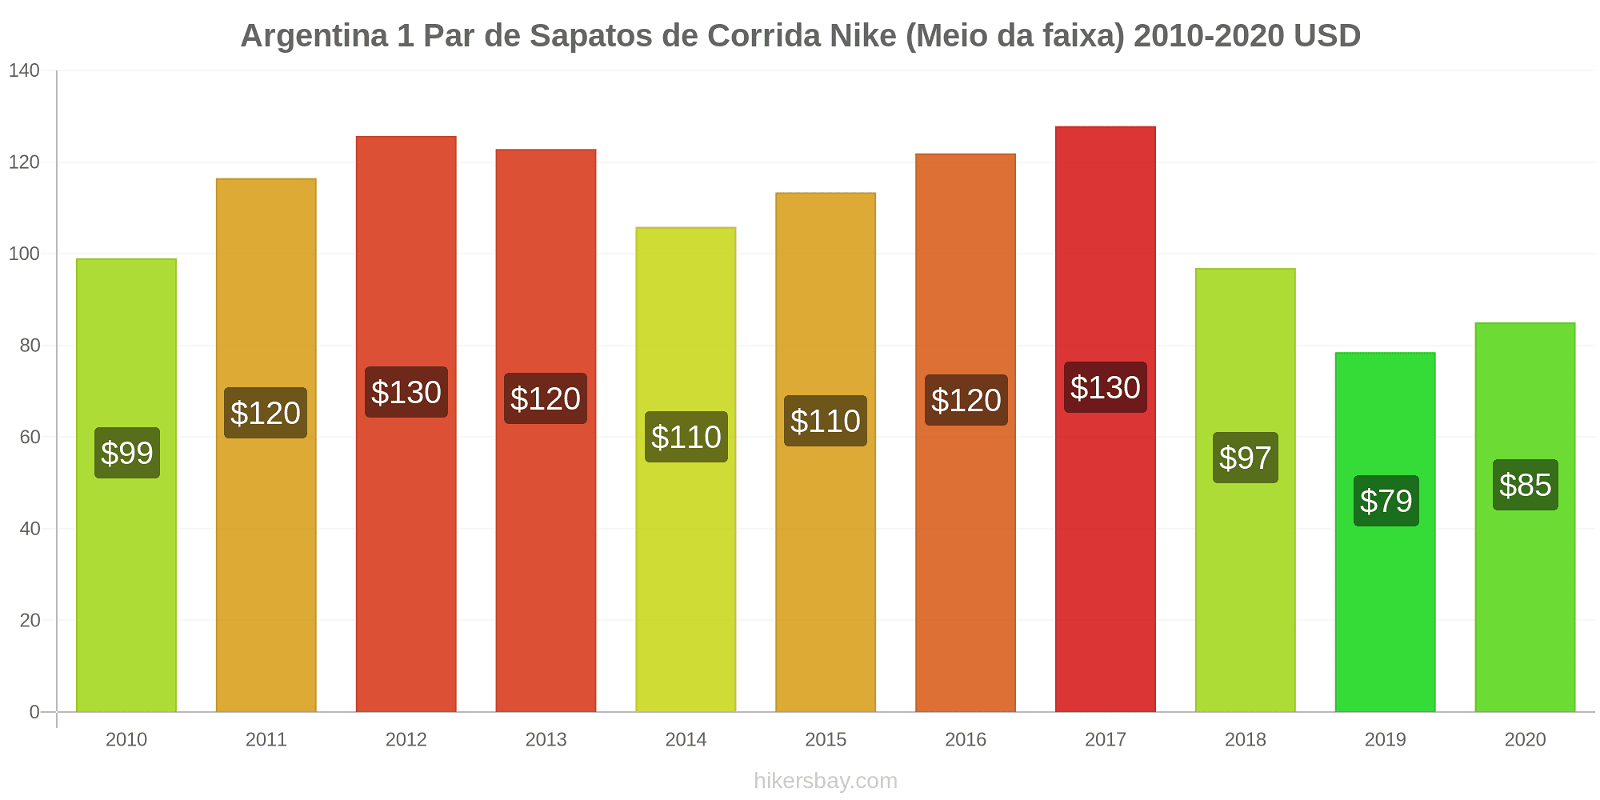 Argentina variação de preço 1 par de tênis Nike (mid-range) hikersbay.com